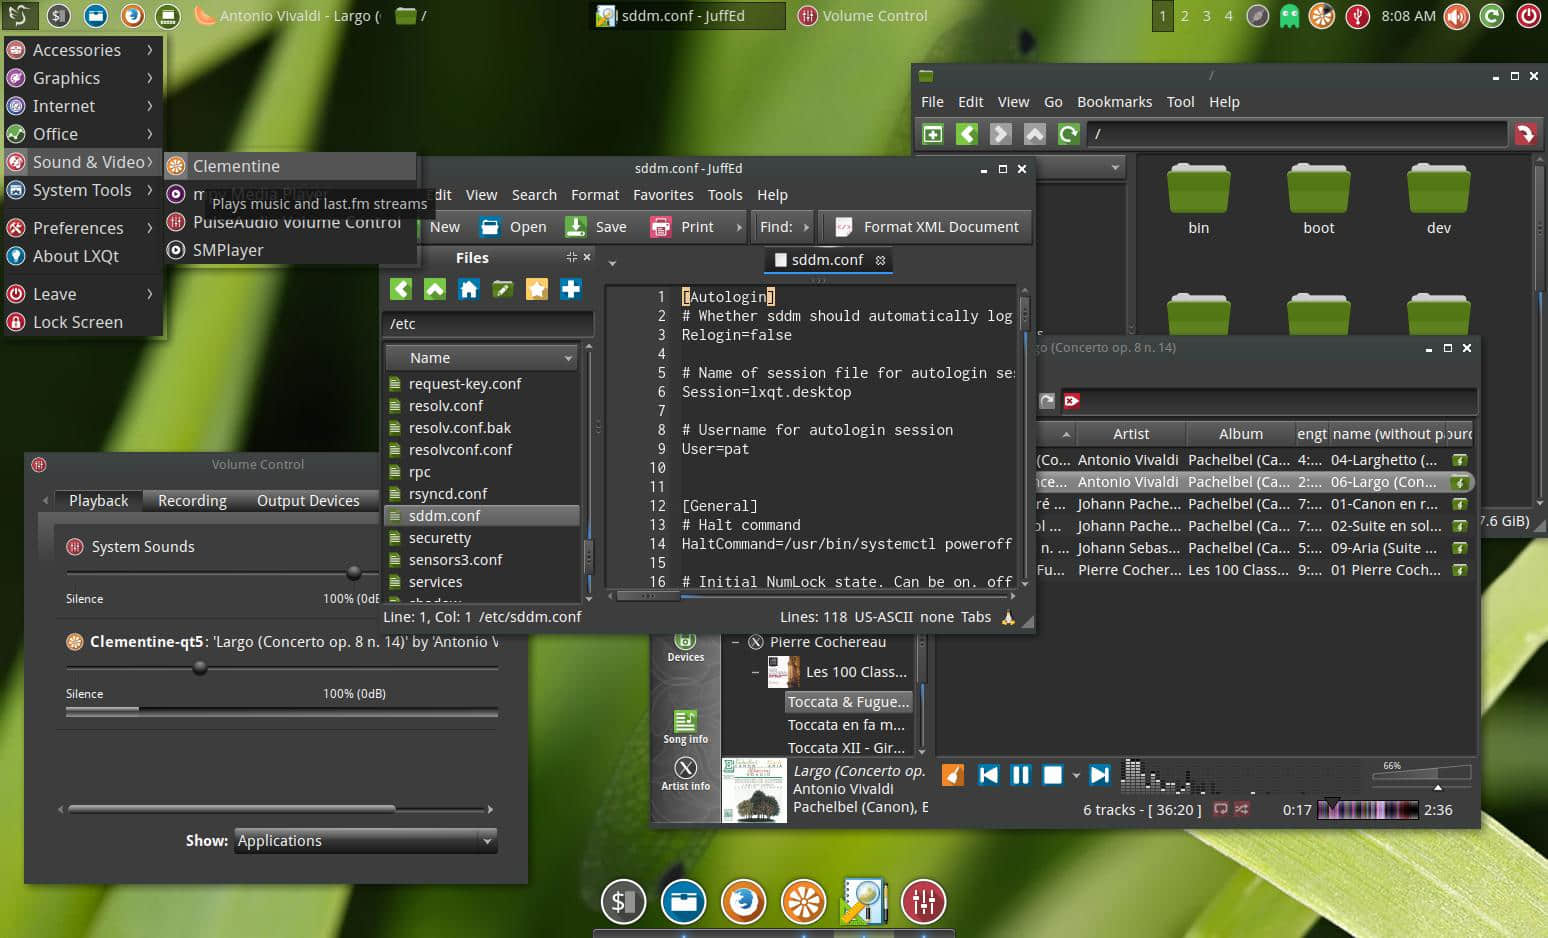 Manjaro Linux LXQt 16.04 Dark Edition